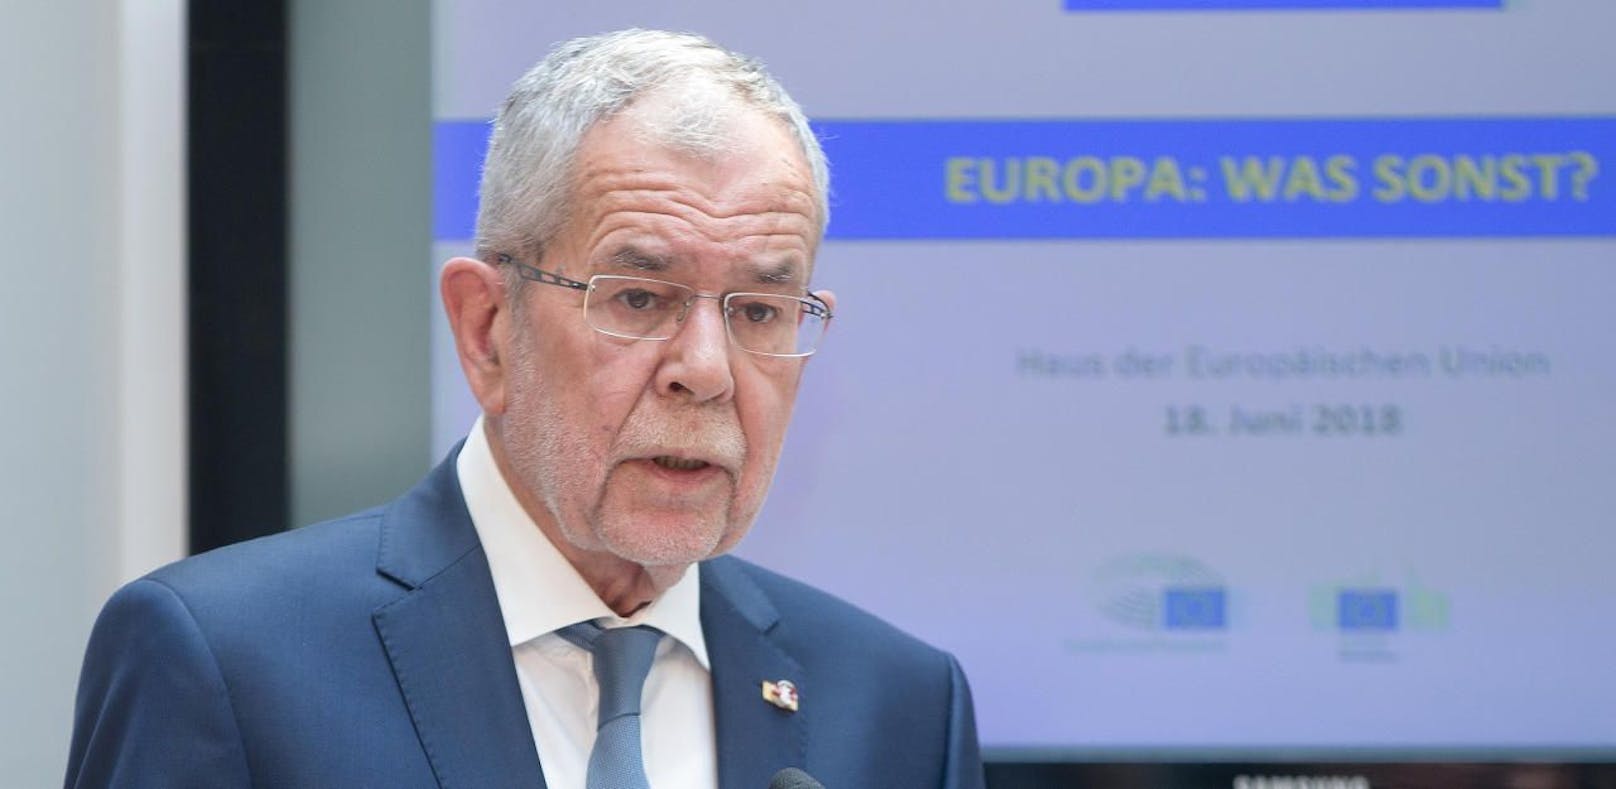 Archivbild: Bundespräsident Alexander Van der Bellen bei der Veranstaltung &quot;Europa: Was sonst?&quot; im Haus der Europäischen Union in Wien. 